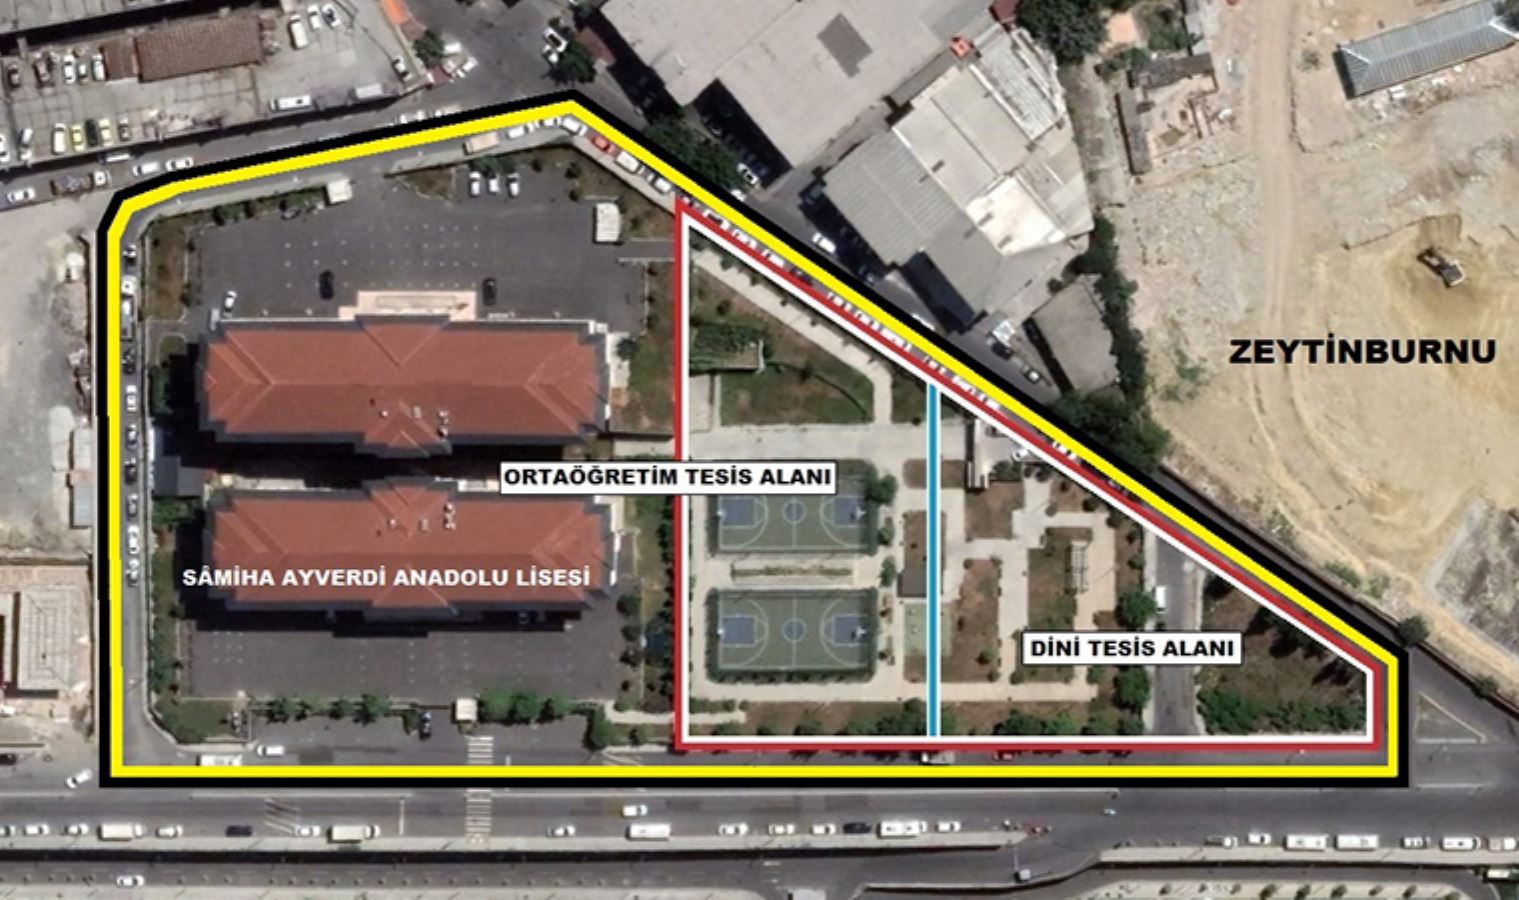 AKP, park alanını dini tesis alanına kattı